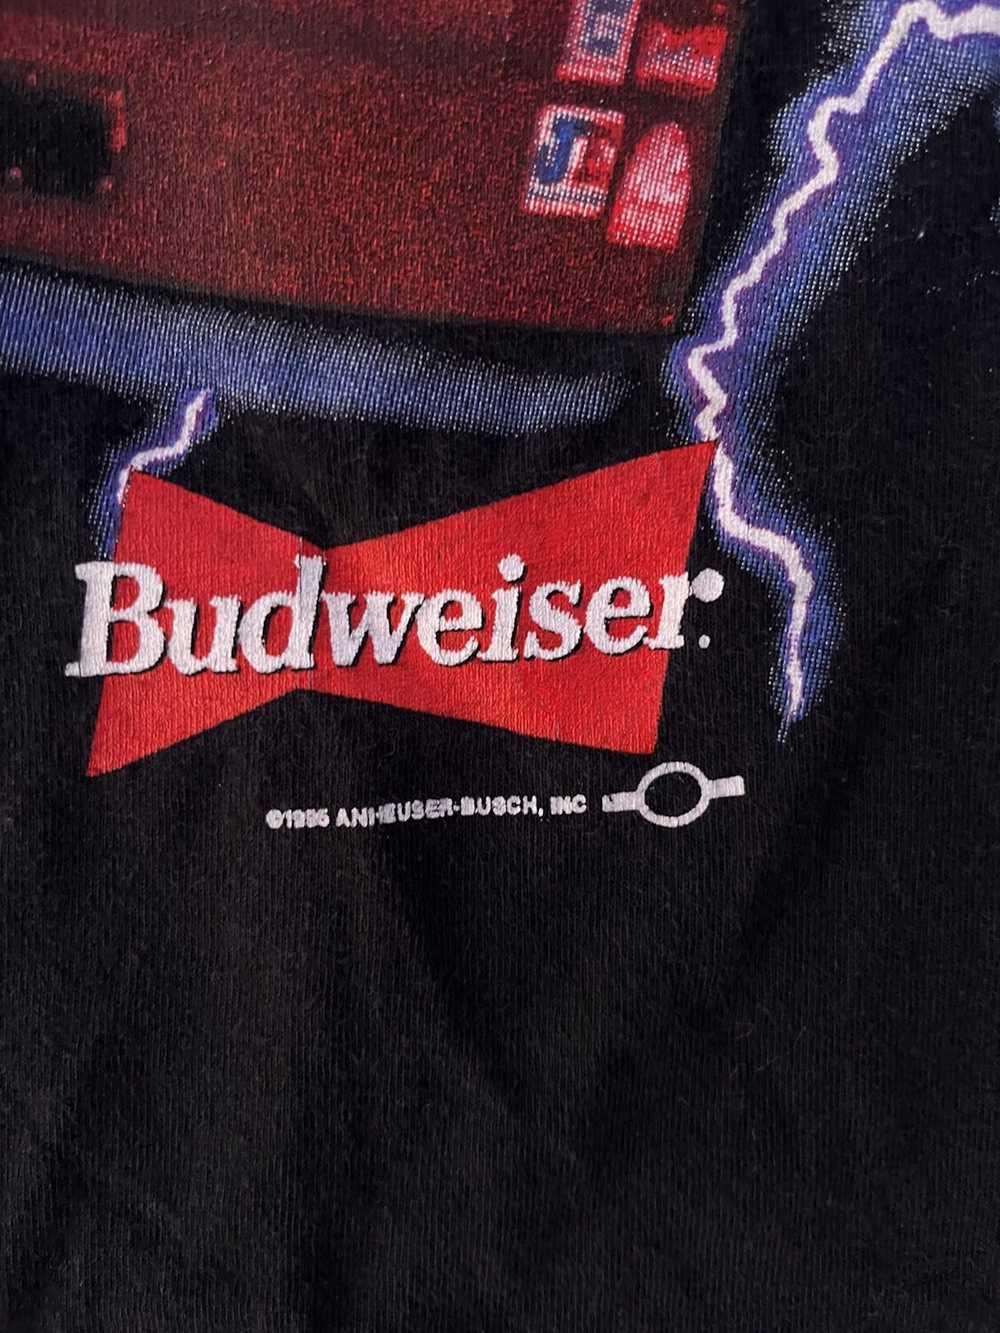 NASCAR × Vintage Budweiser Nascar T-shirt - image 2